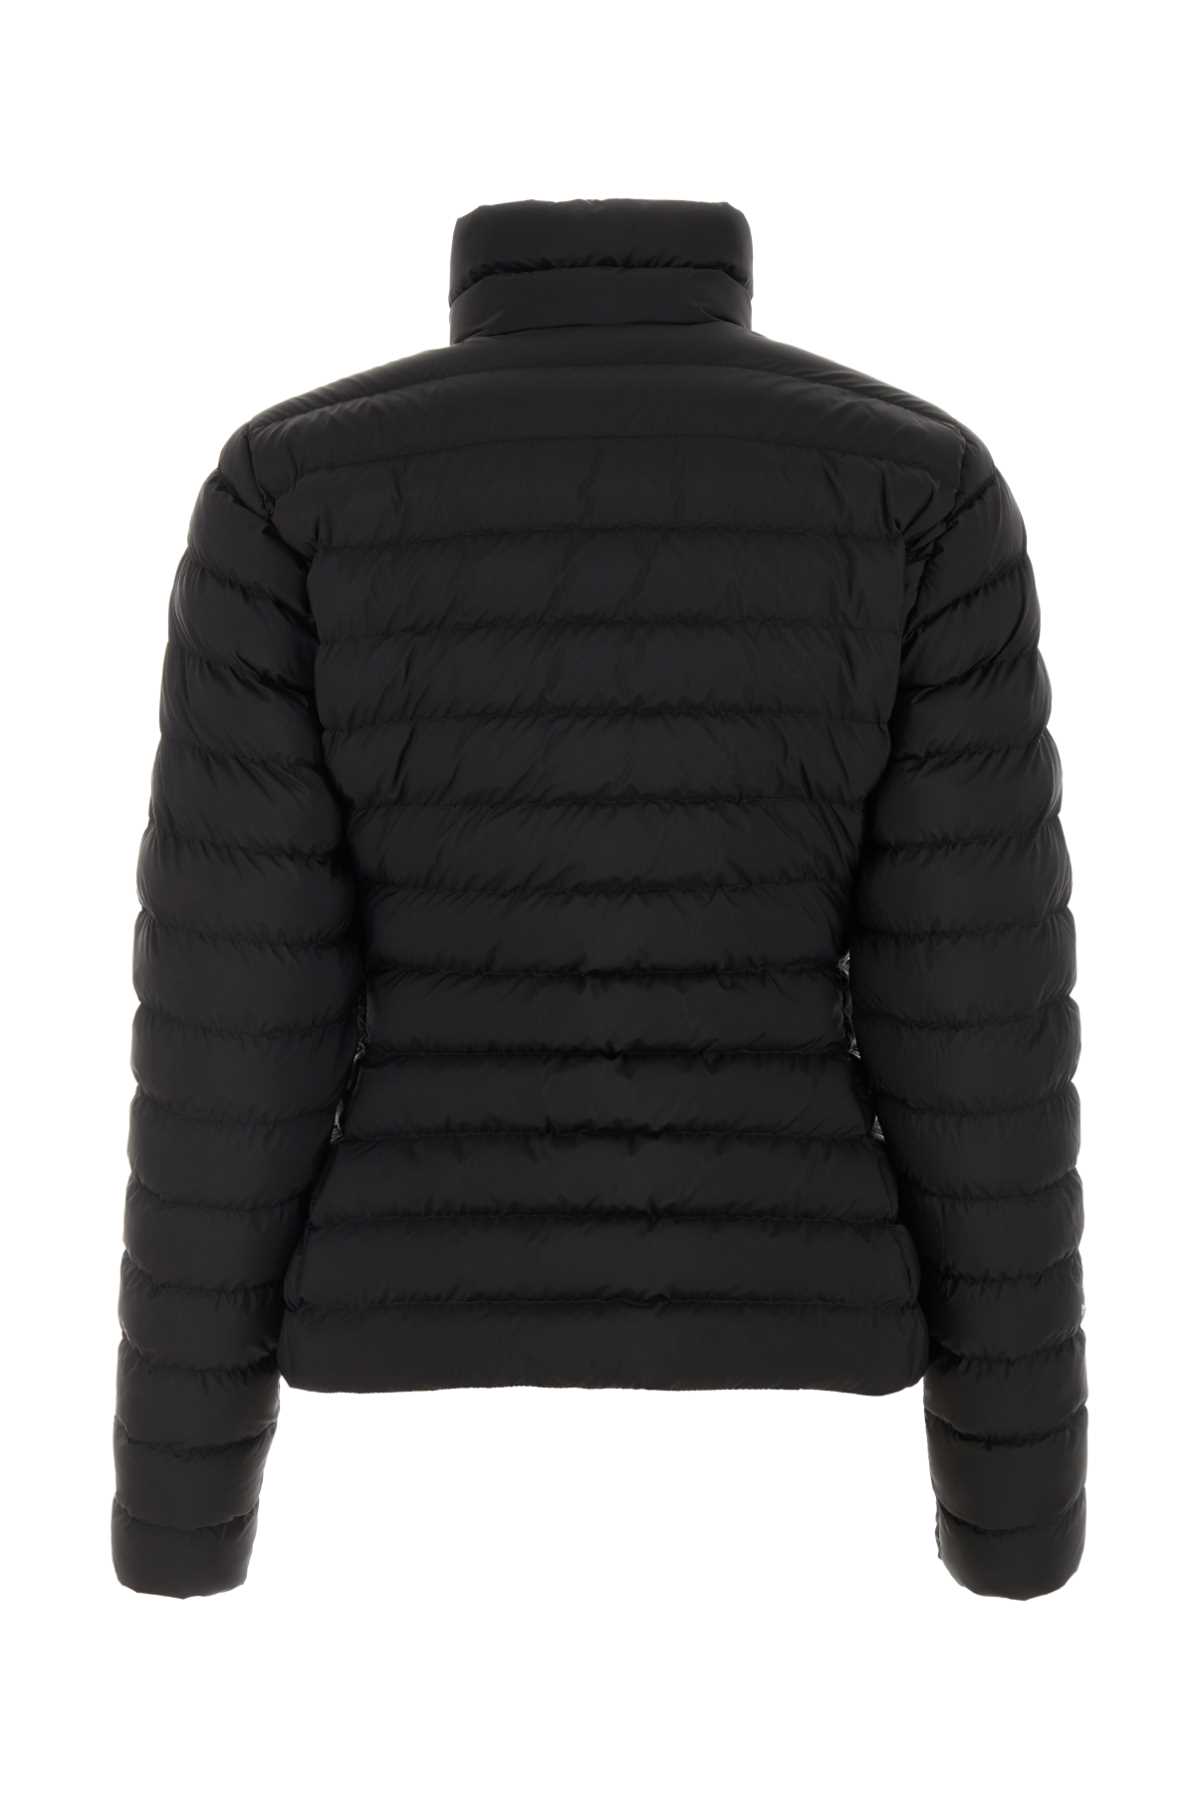 Balenciaga Black Nylon Padded Jacket